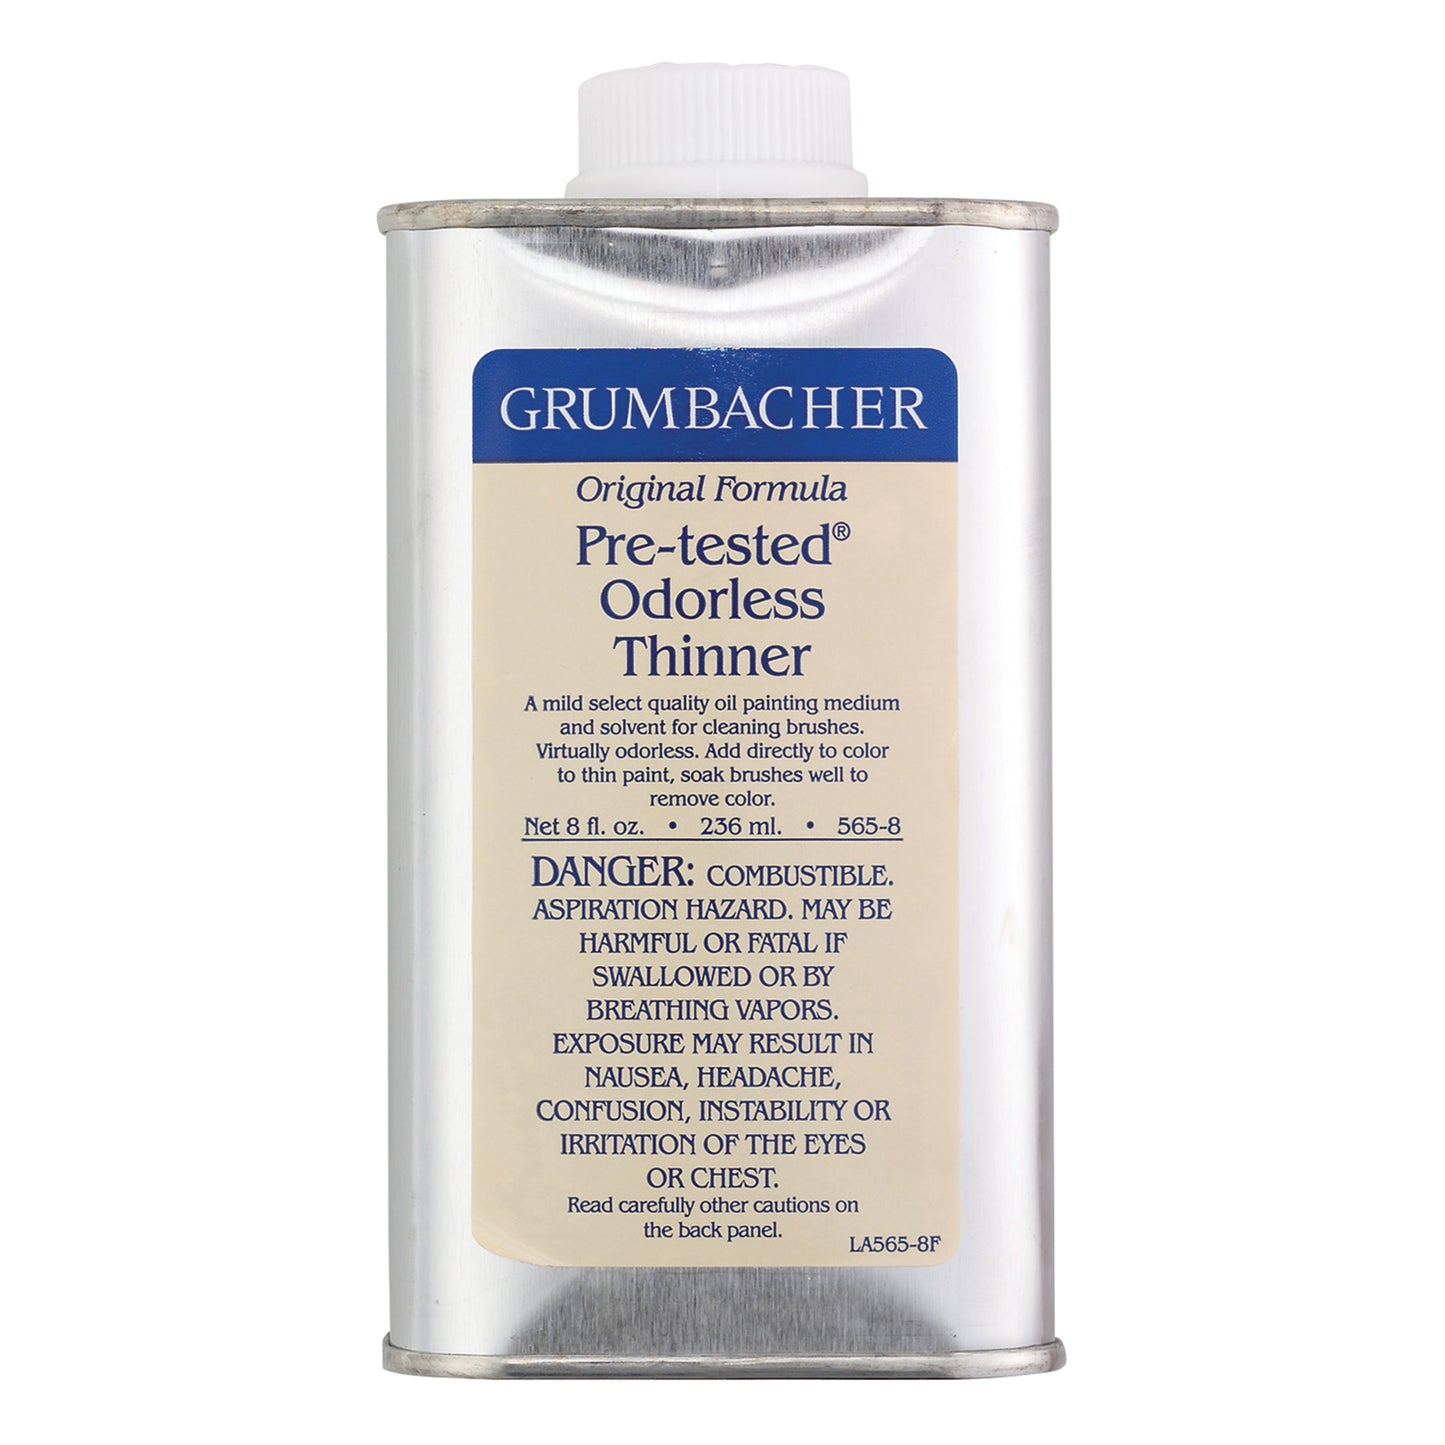 Grumbacher Pre-tested Odorless Thinner - 8 oz - by Grumbacher - K. A. Artist Shop